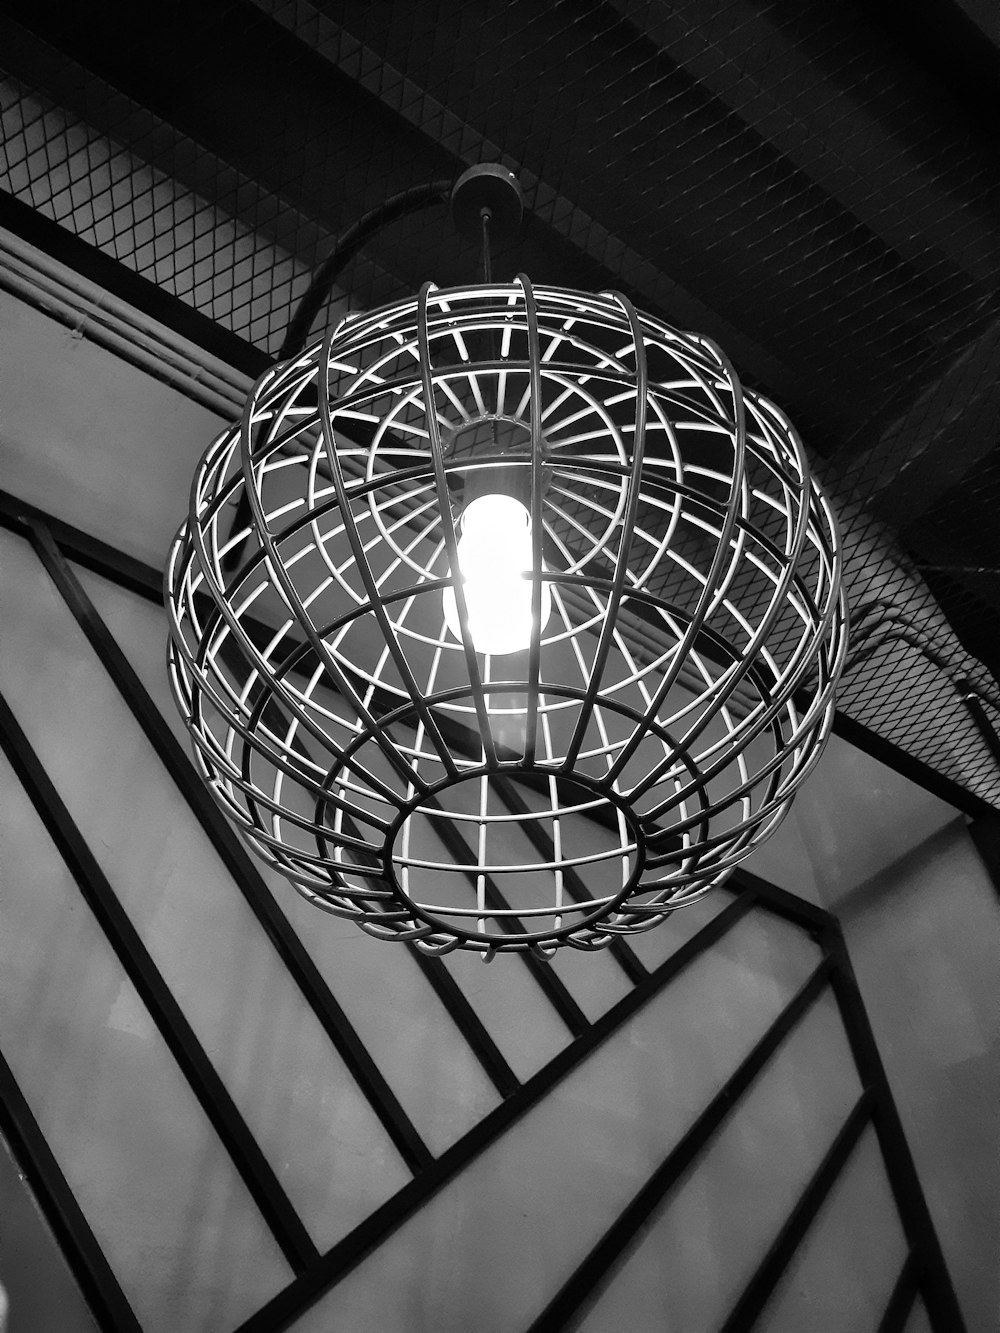 둥근 펜던트 램프의 그레이스케일 사진